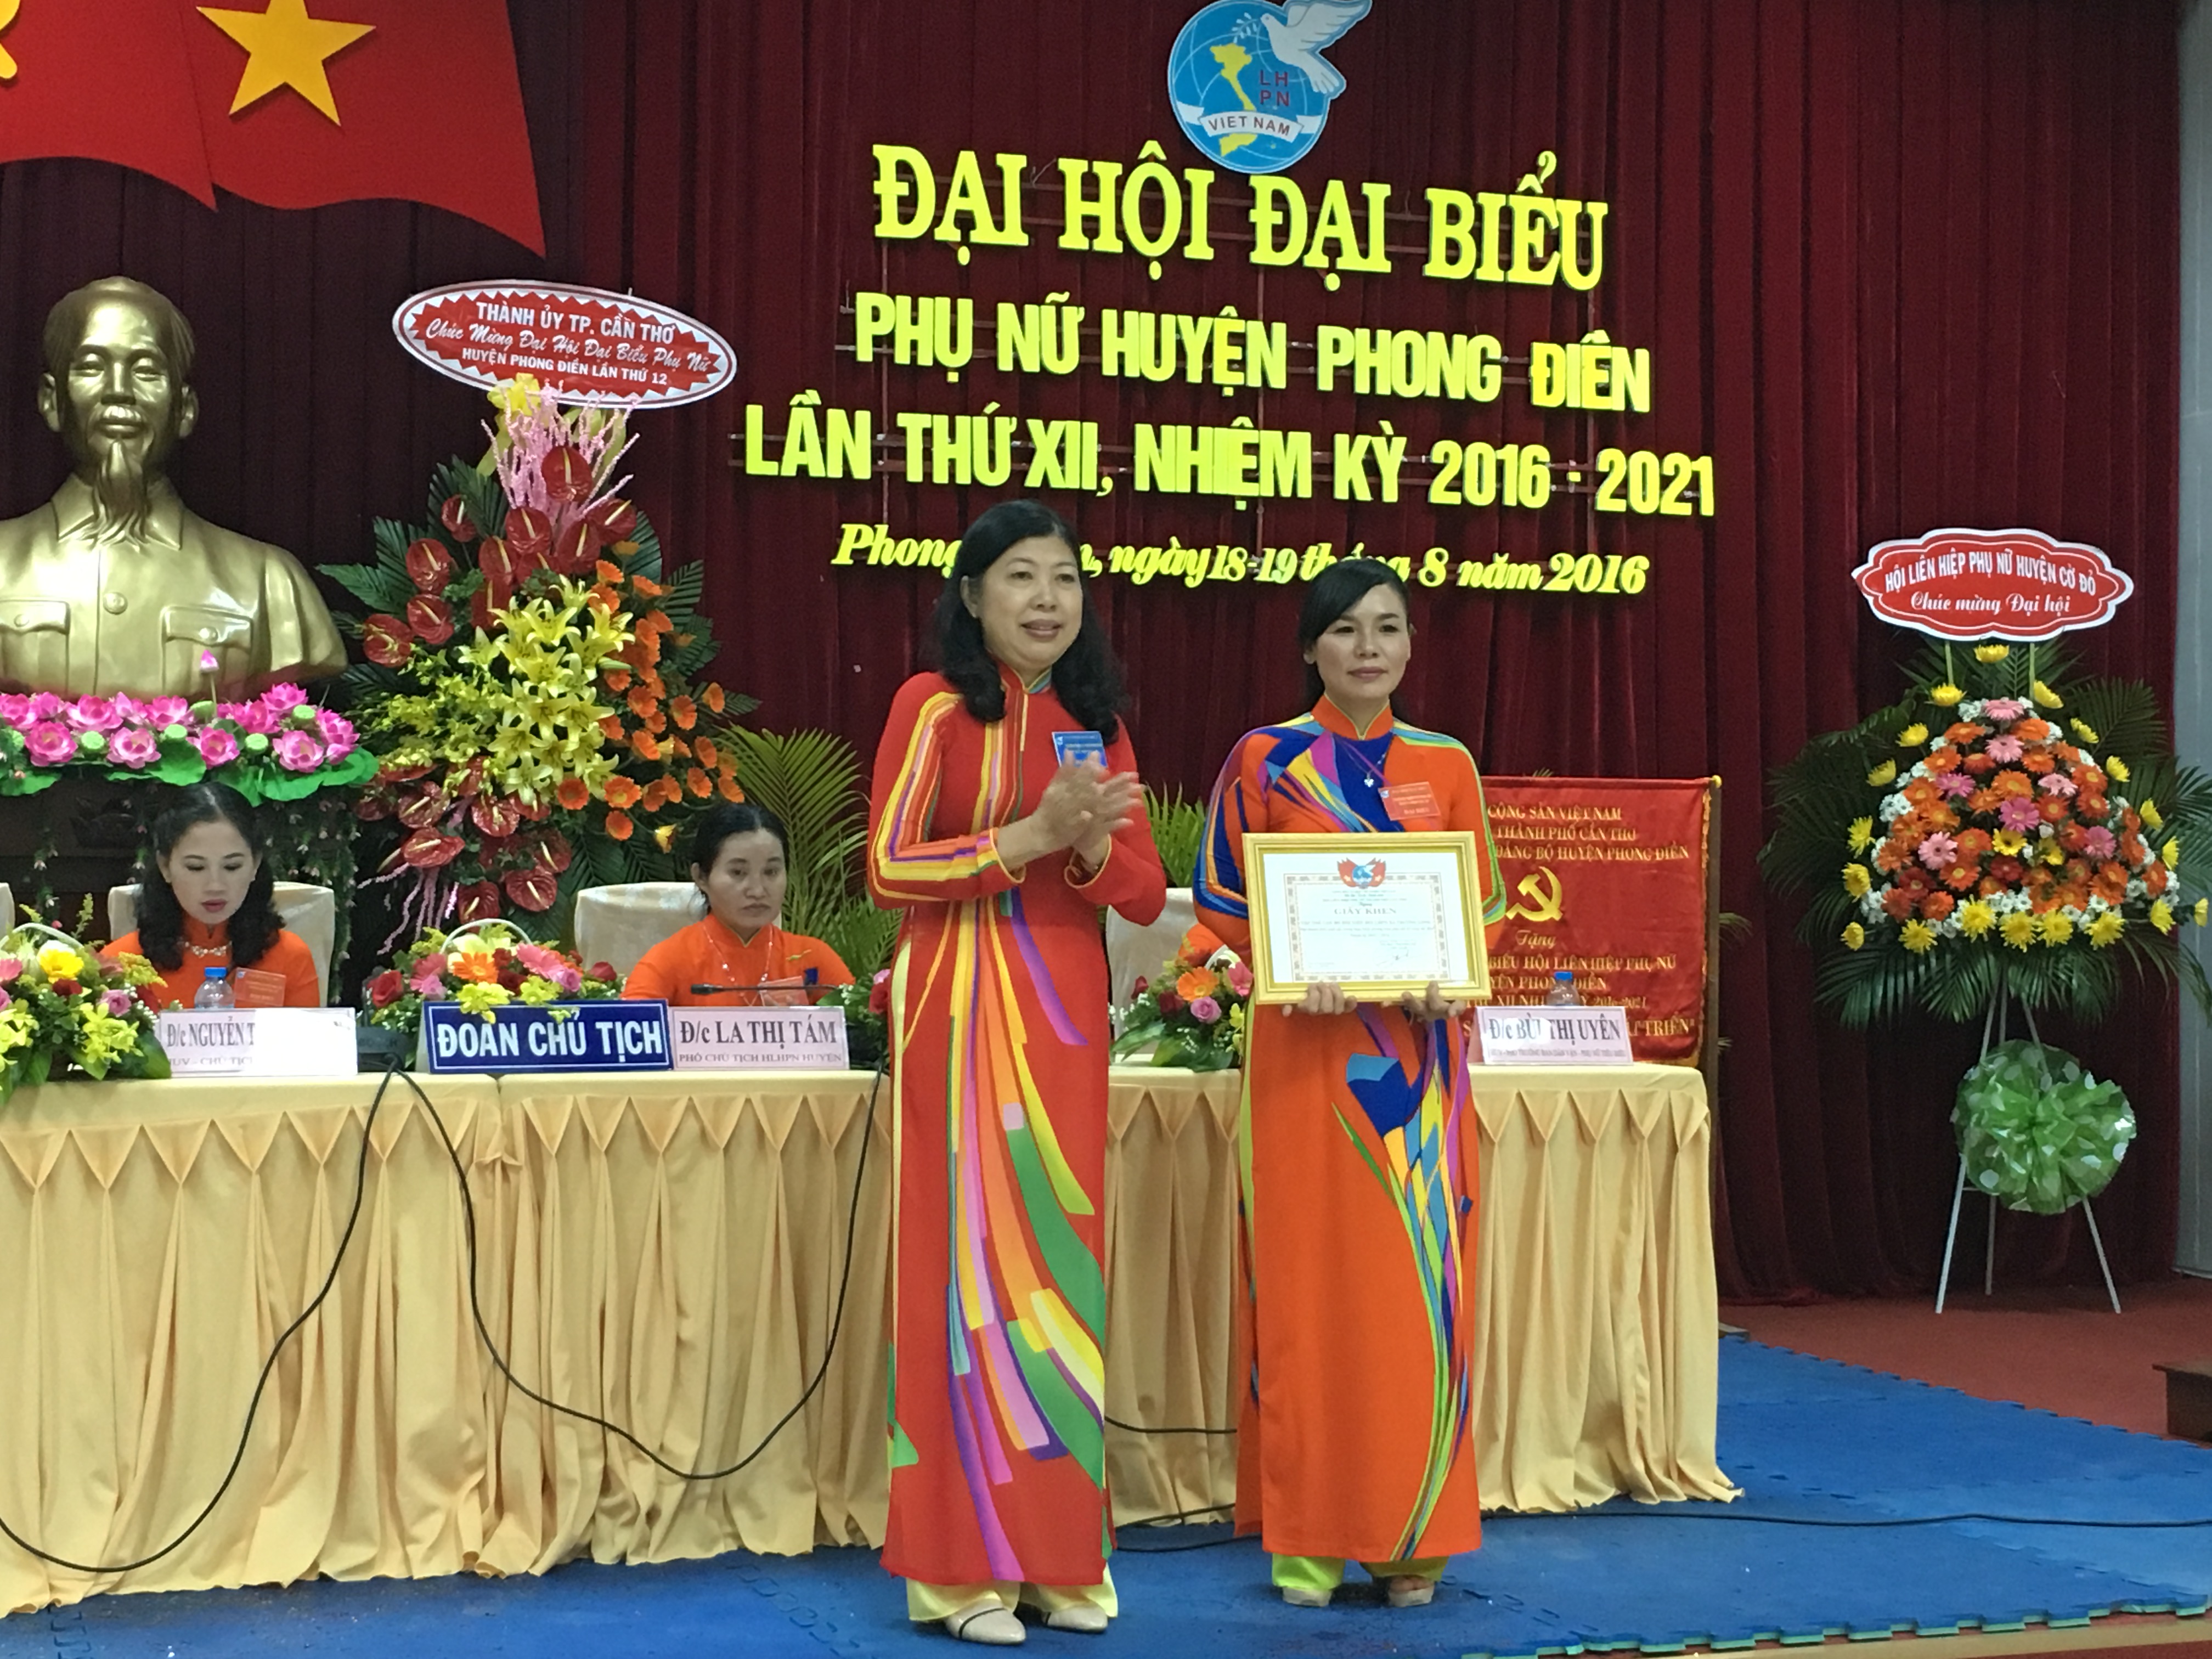 Đại hội đại biểu Phụ nữ huyện Phong Điền, nhiệm kỳ 2016-2021: Đẩy mạnh...